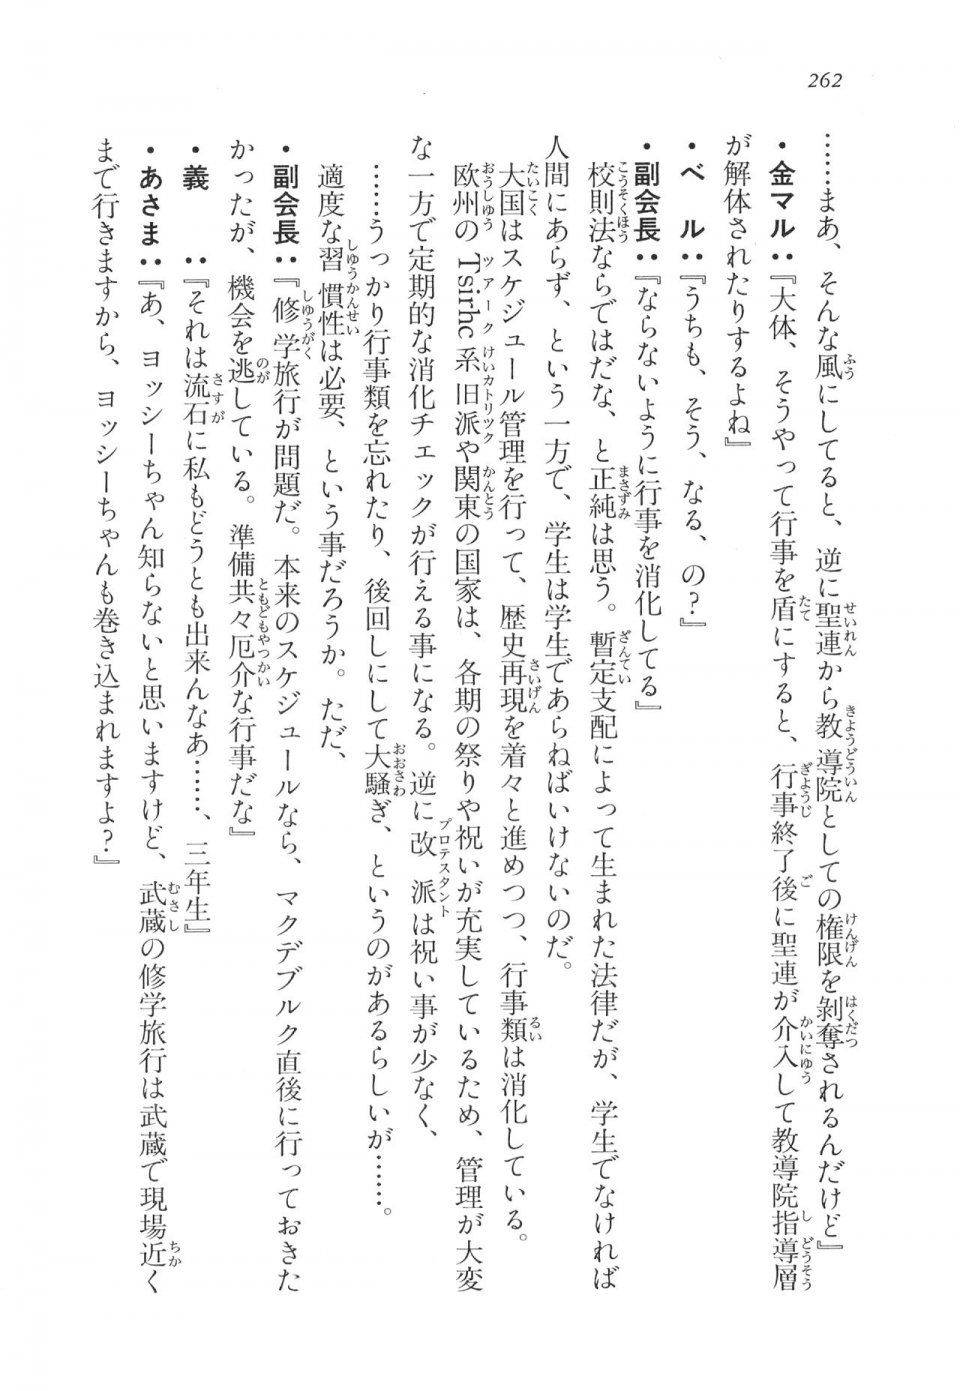 Kyoukai Senjou no Horizon LN Vol 11(5A) - Photo #262